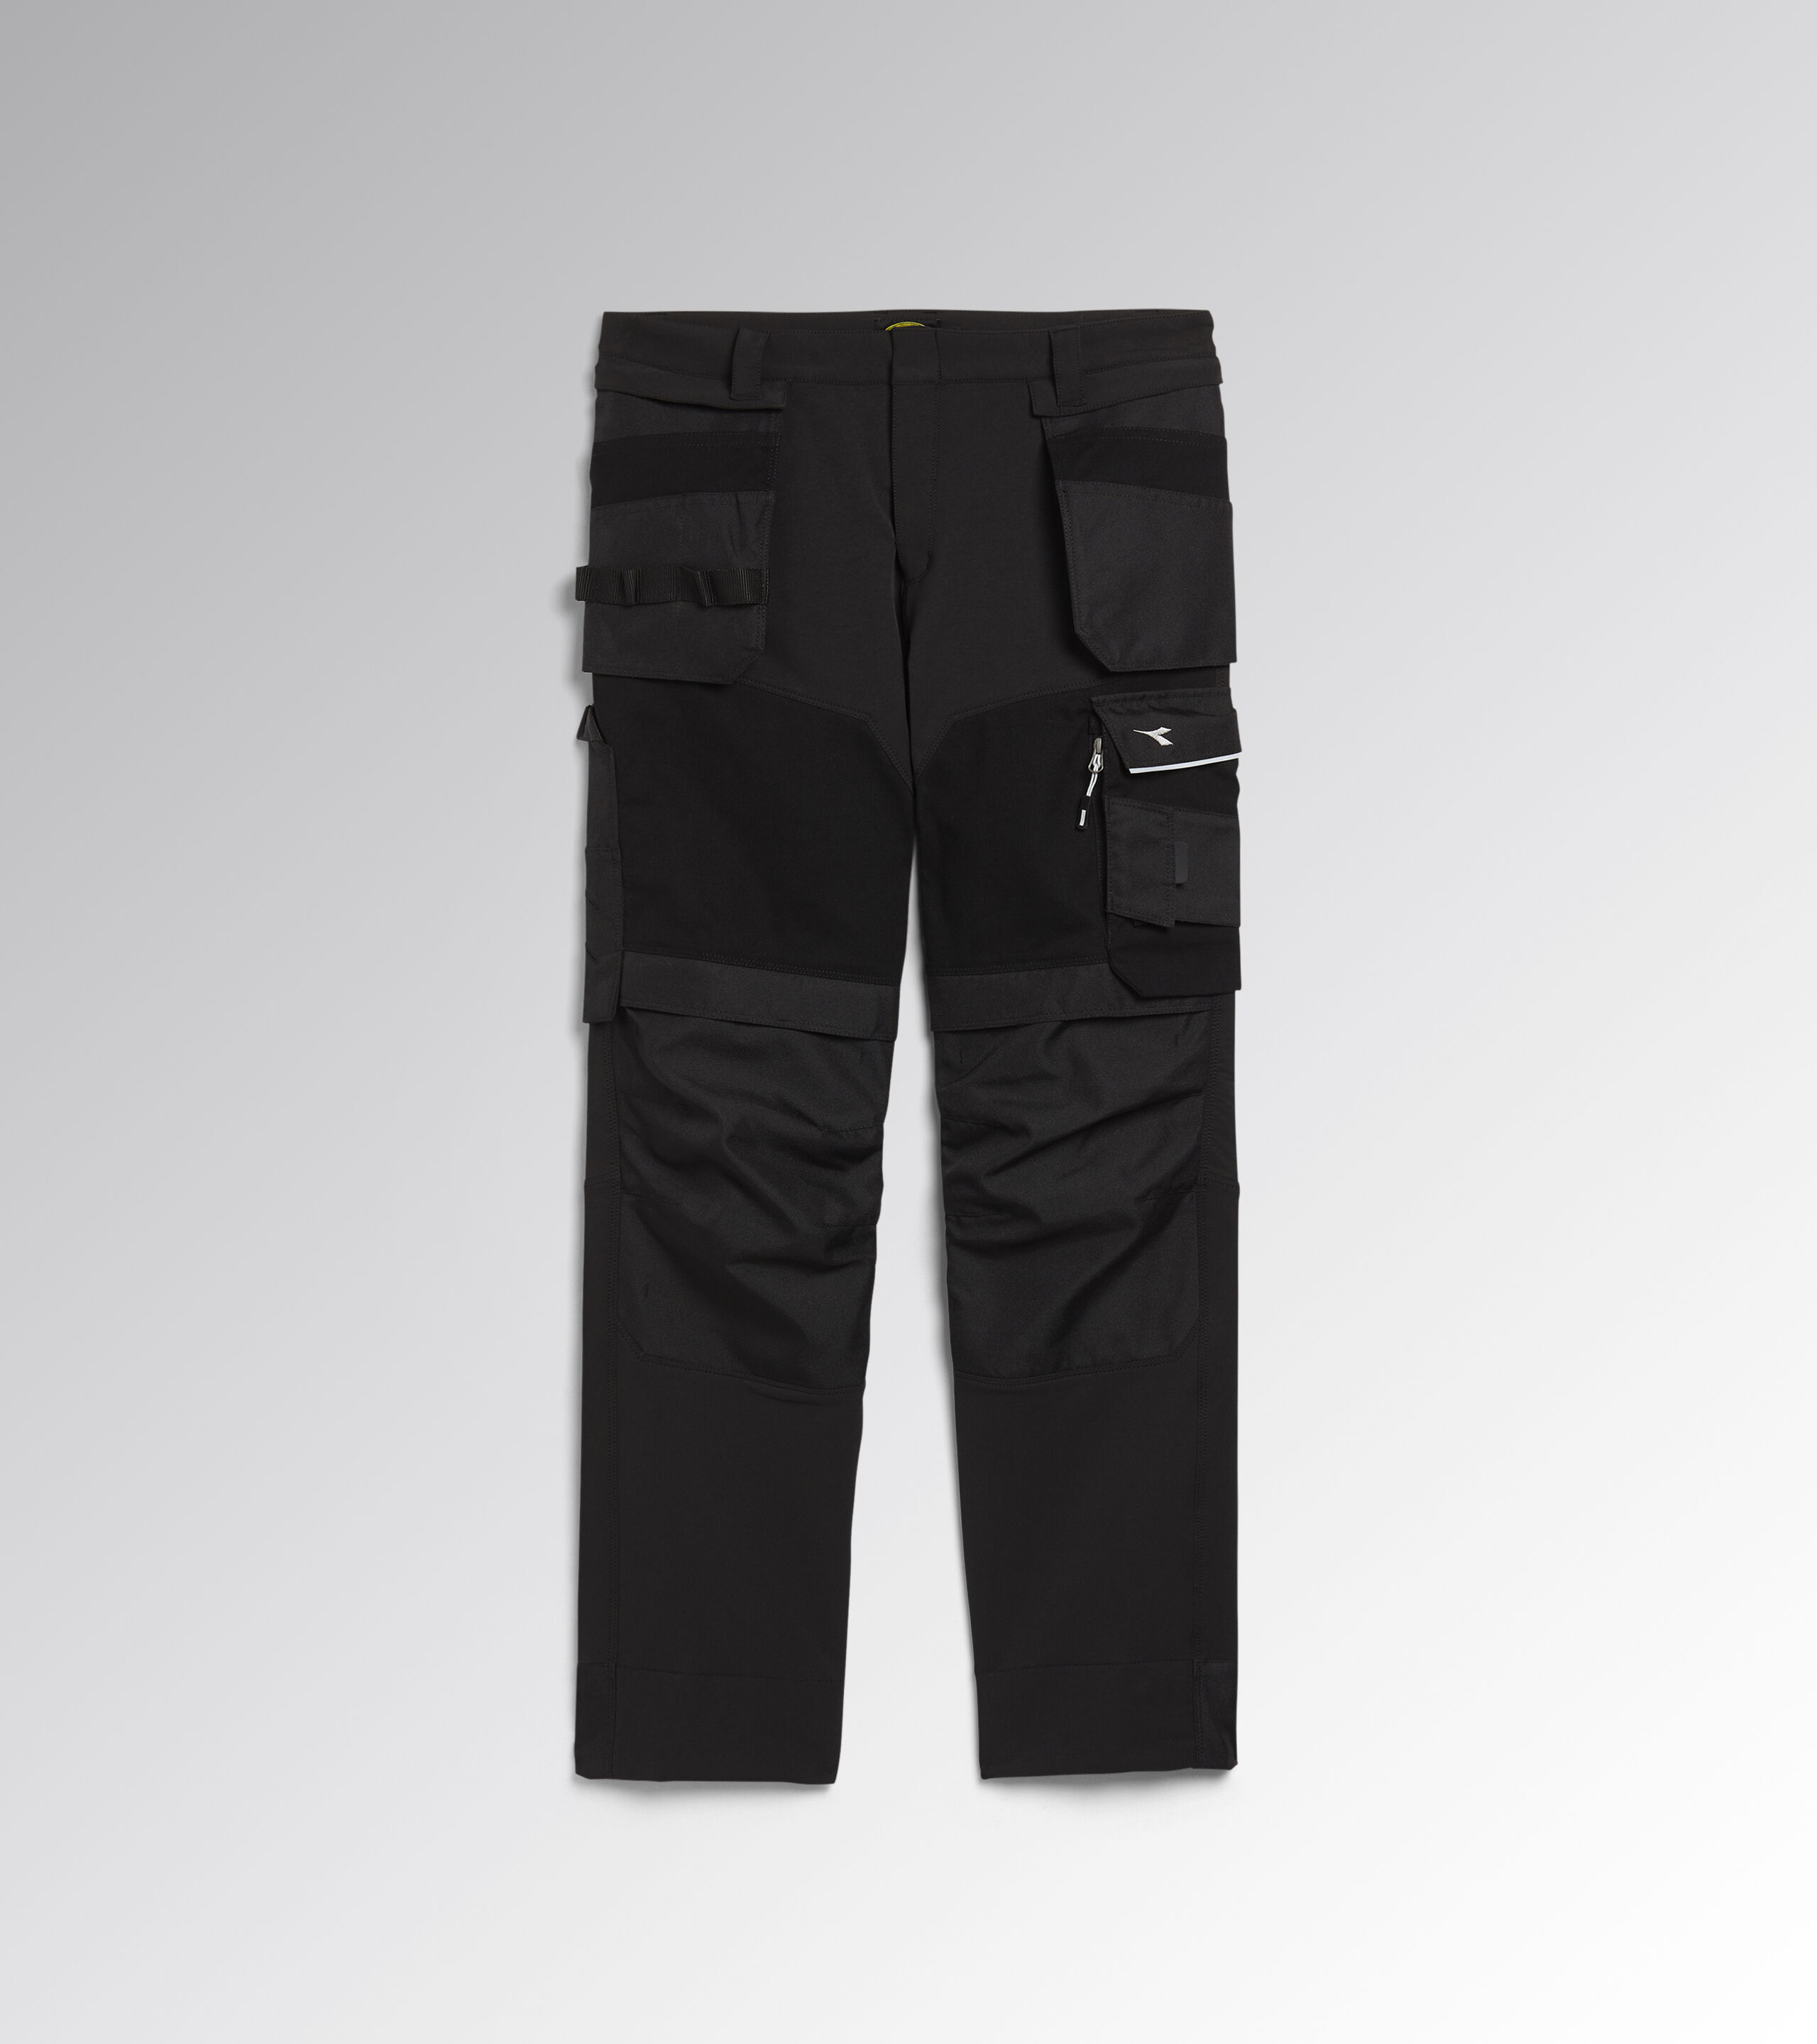 Diadora Pantalone da Lavoro Multitasche Jeans Taglia 54 172115 Cargo Denim